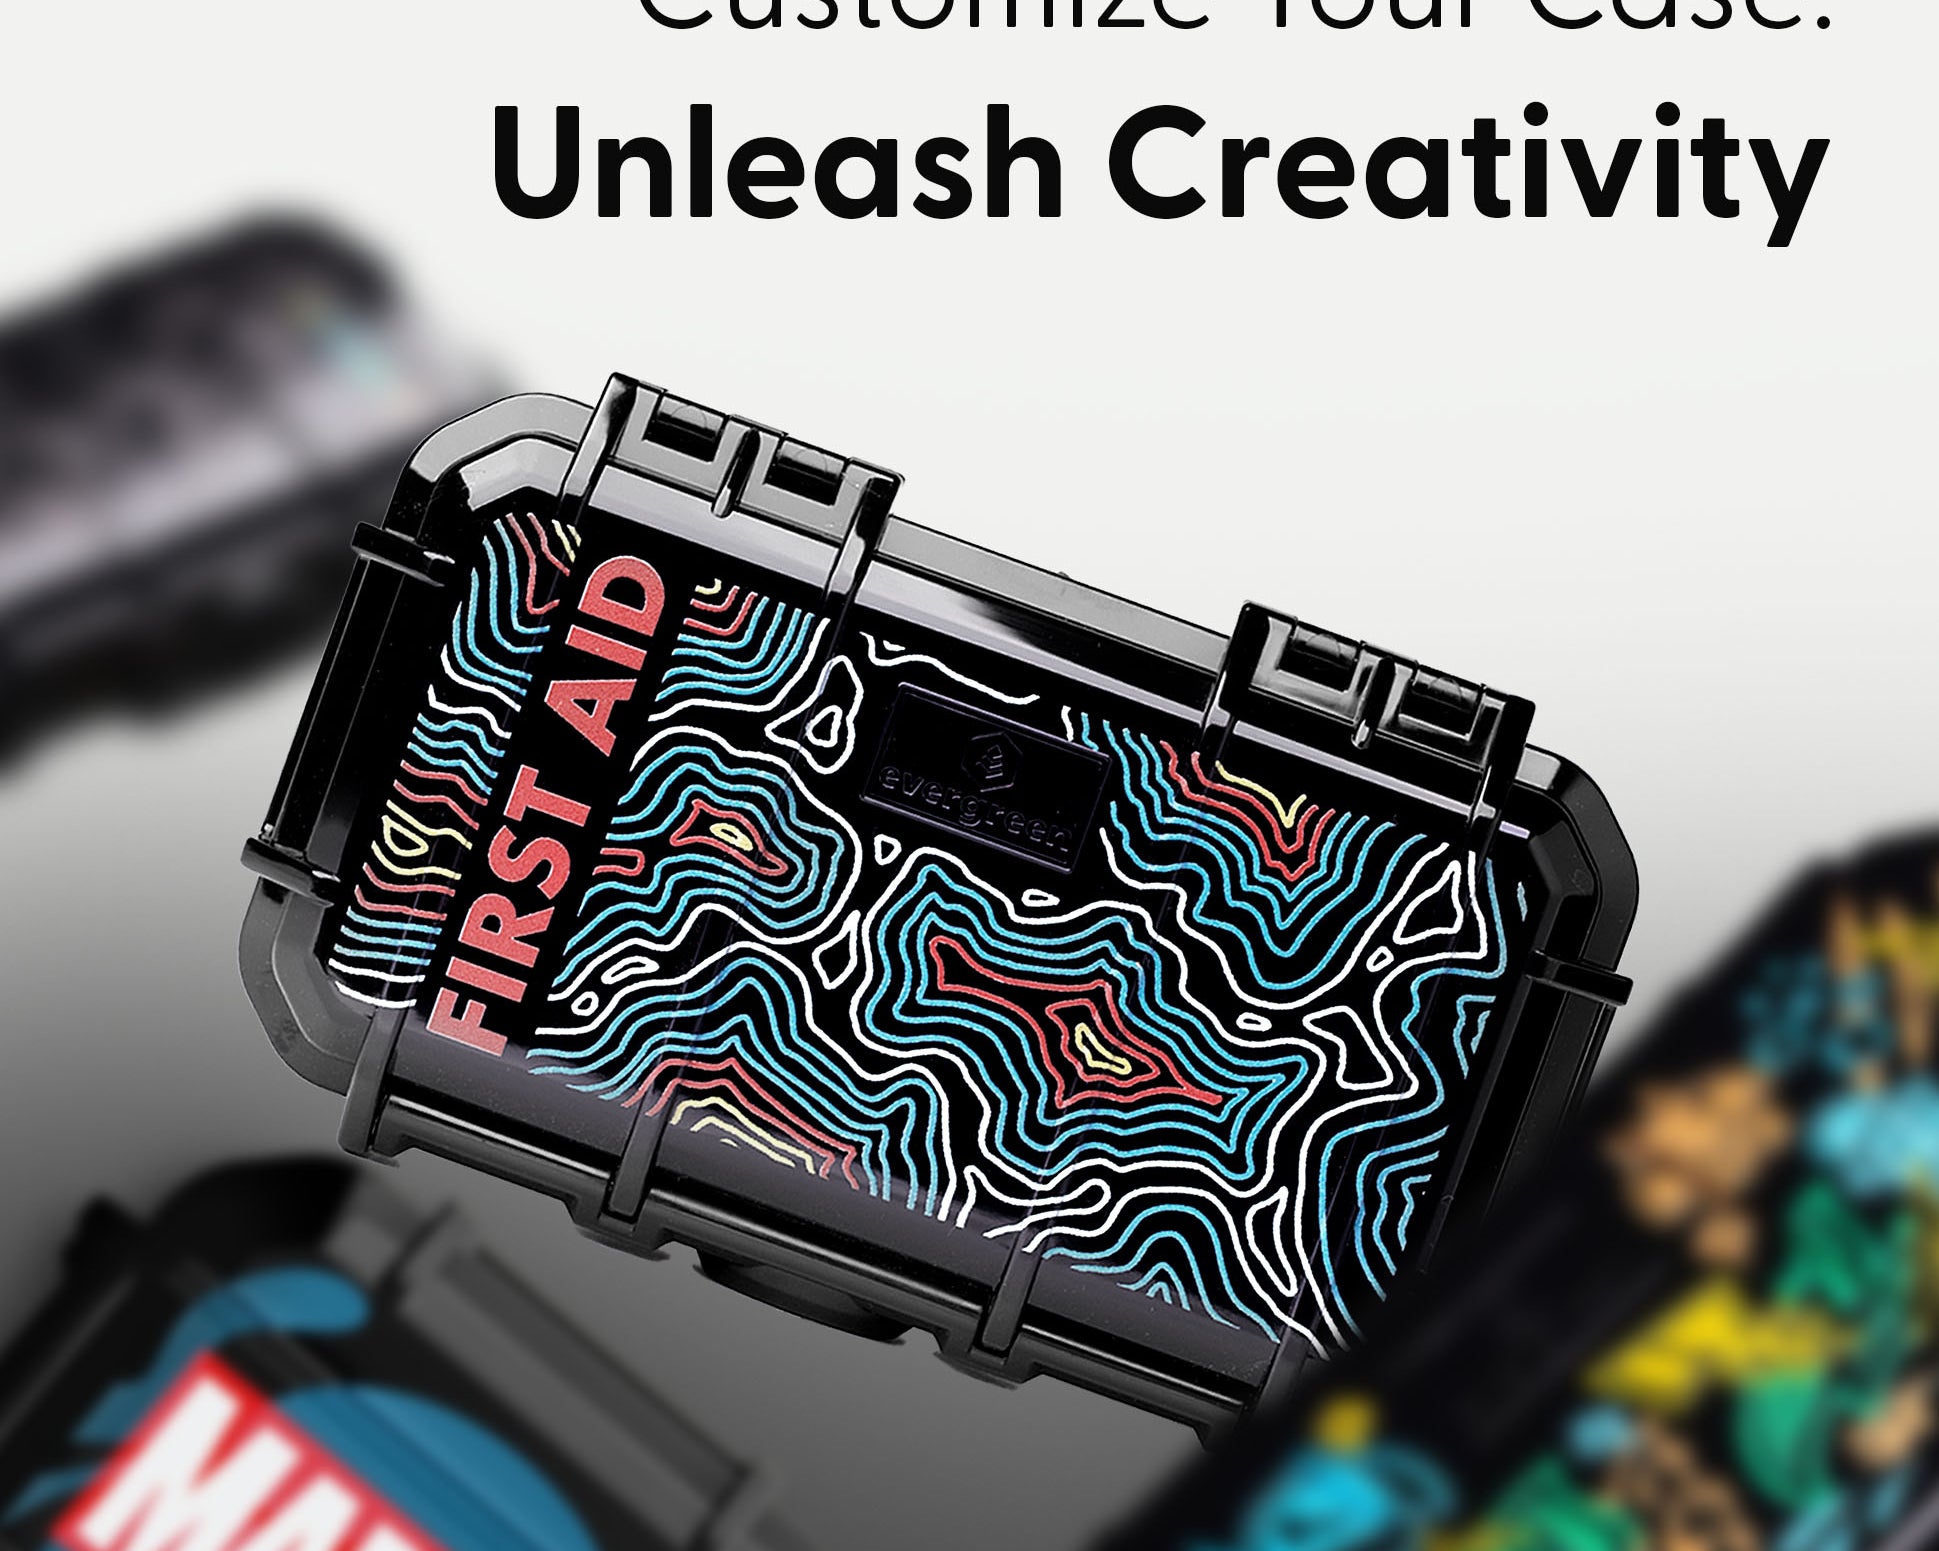 Customize Your Case: Unleash Creativity